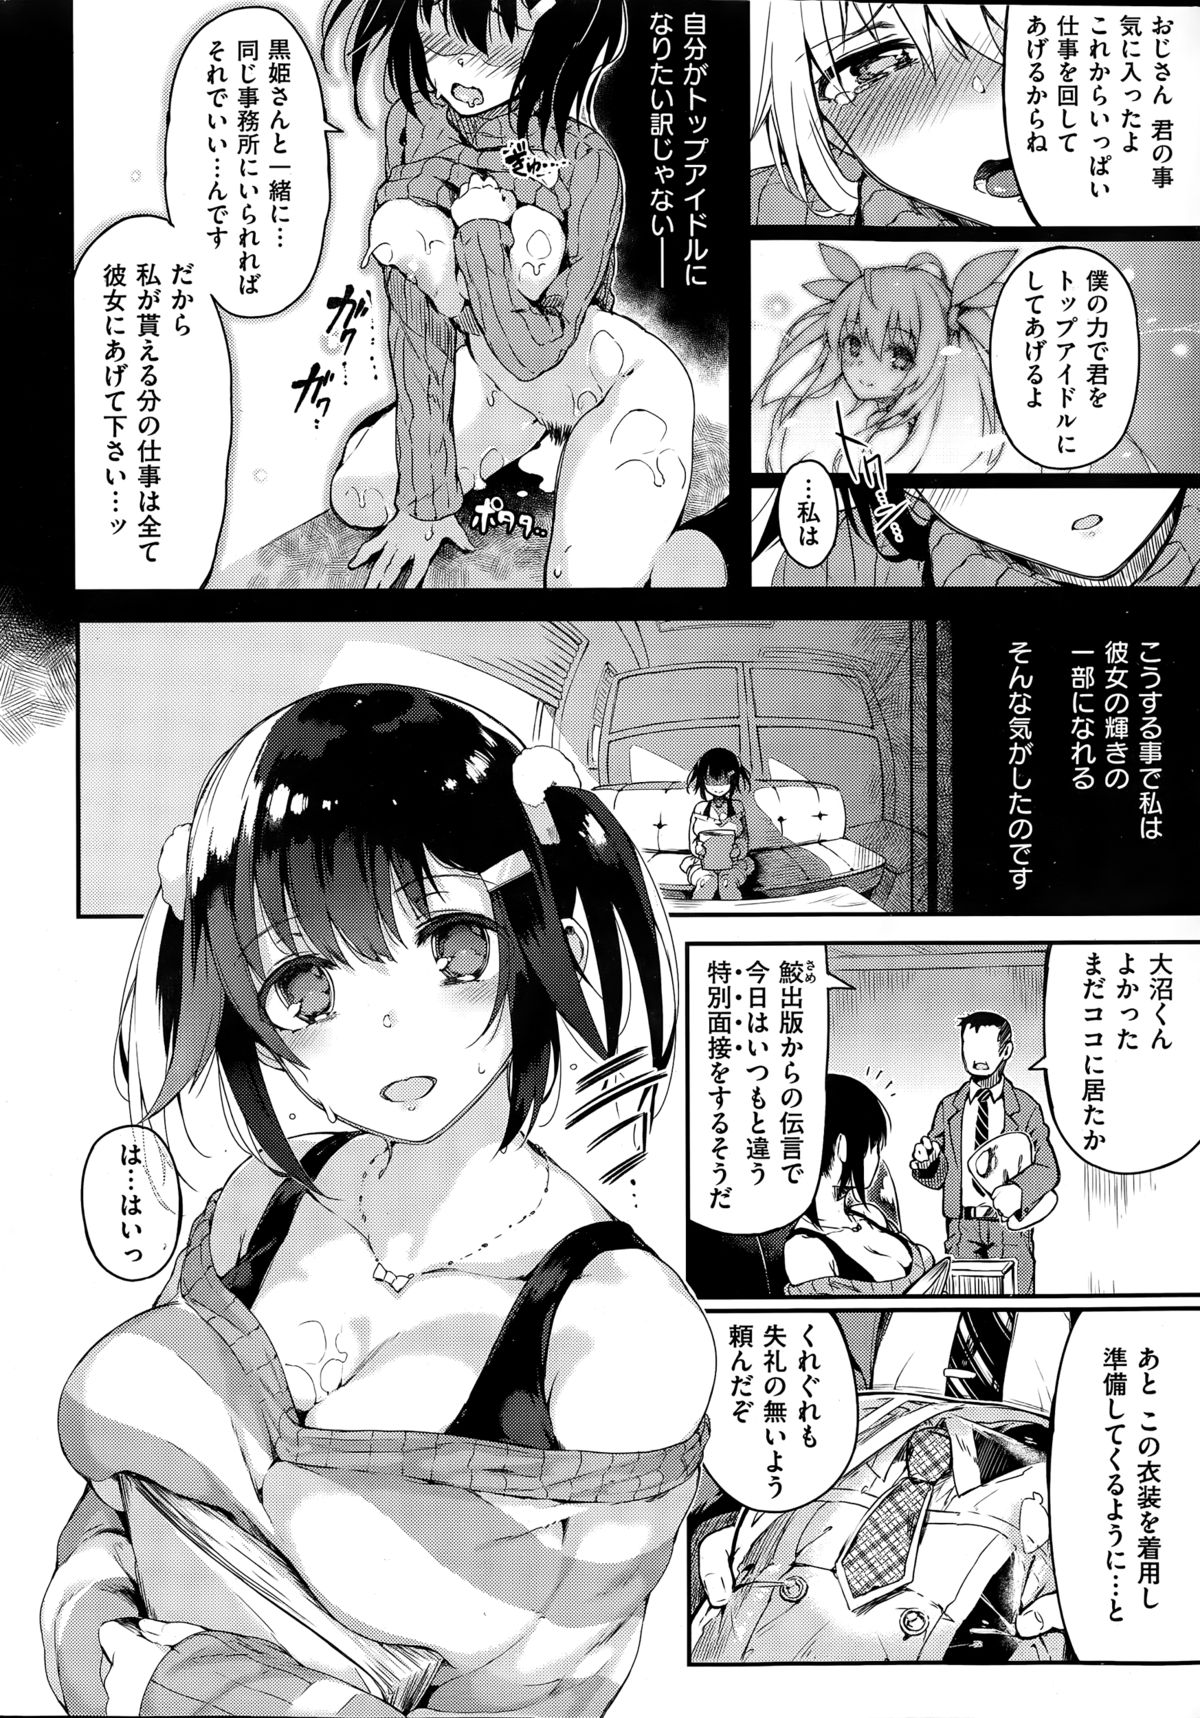 [ぴょん吉] [Pyon-Kti] COMIC Kairakuten BEAST 2015-03 [Joze] page 8 full